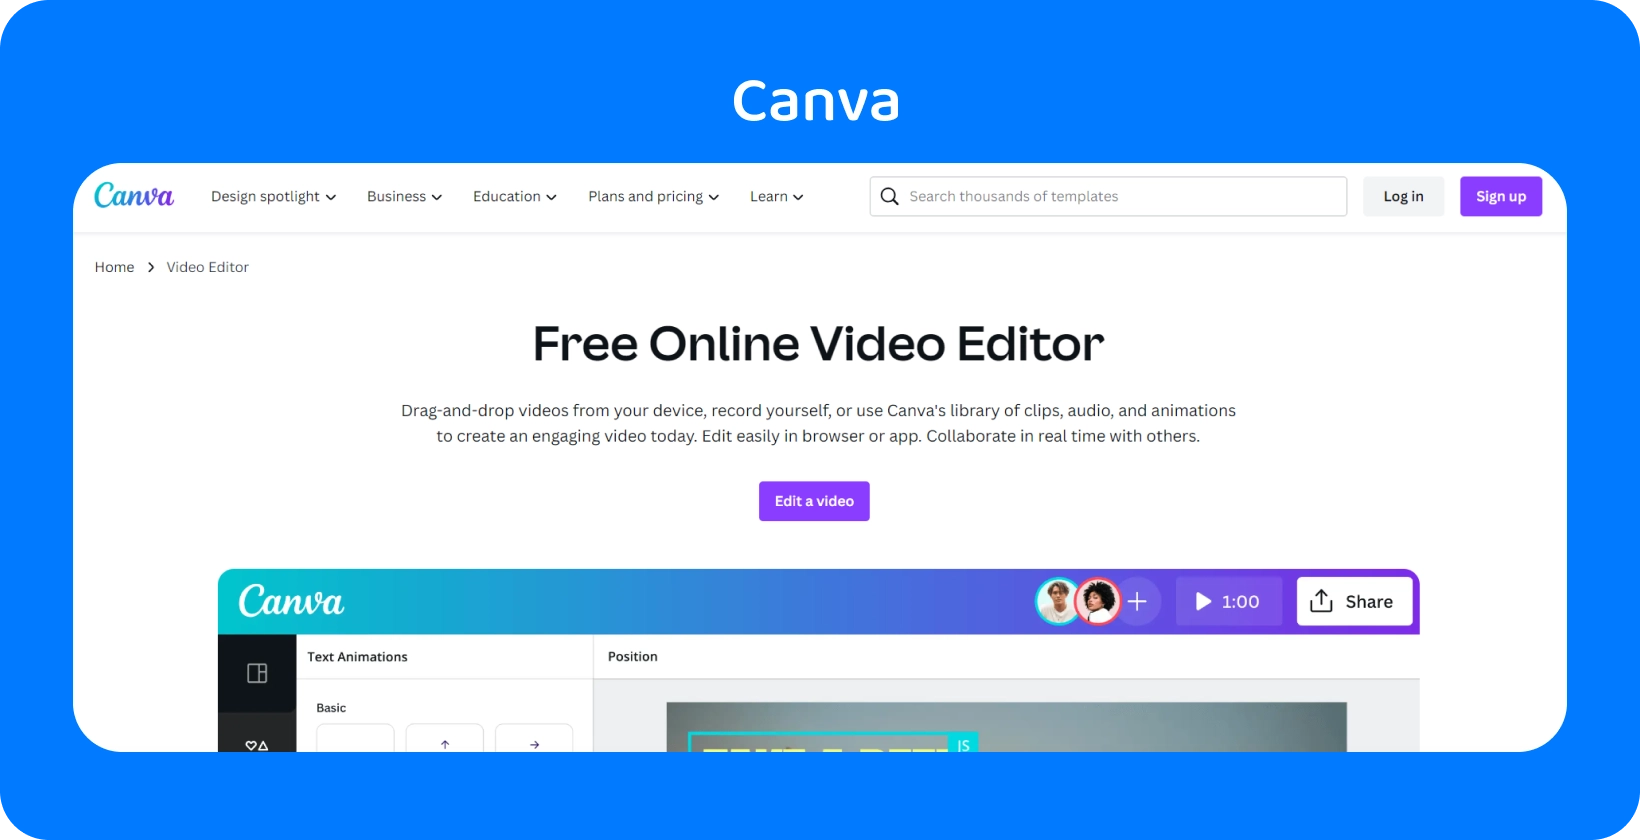 L'interfaccia intuitiva di Canva viene visualizzata con varie opzioni di design per social media, presentazioni, video e altro ancora.